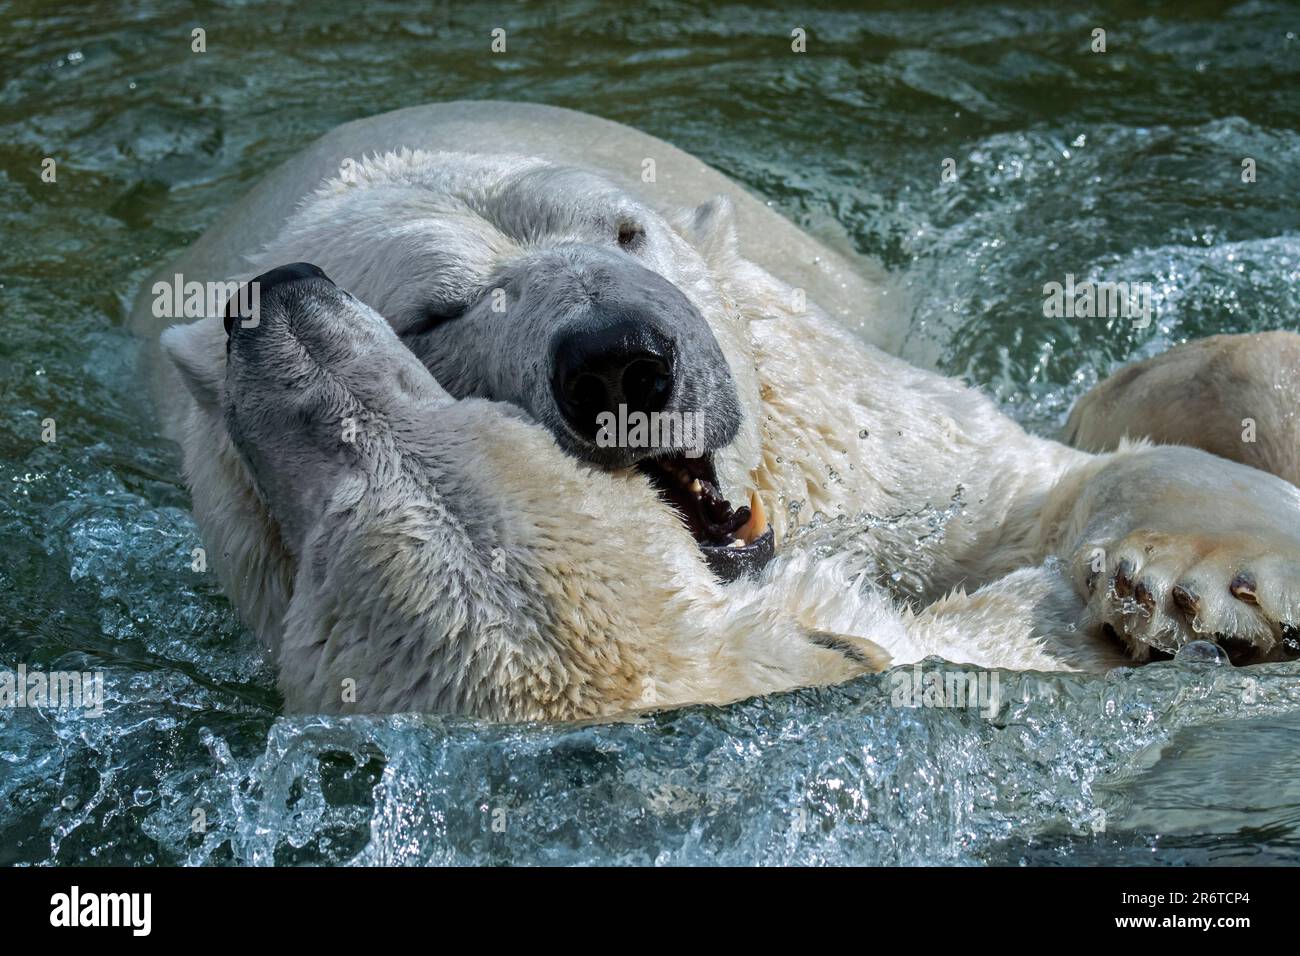 Deux ours polaires (Ursus maritimus) combats de jeu / jouer à la lutte dans l'eau de la piscine au zoo lors d'une journée chaude en été Banque D'Images